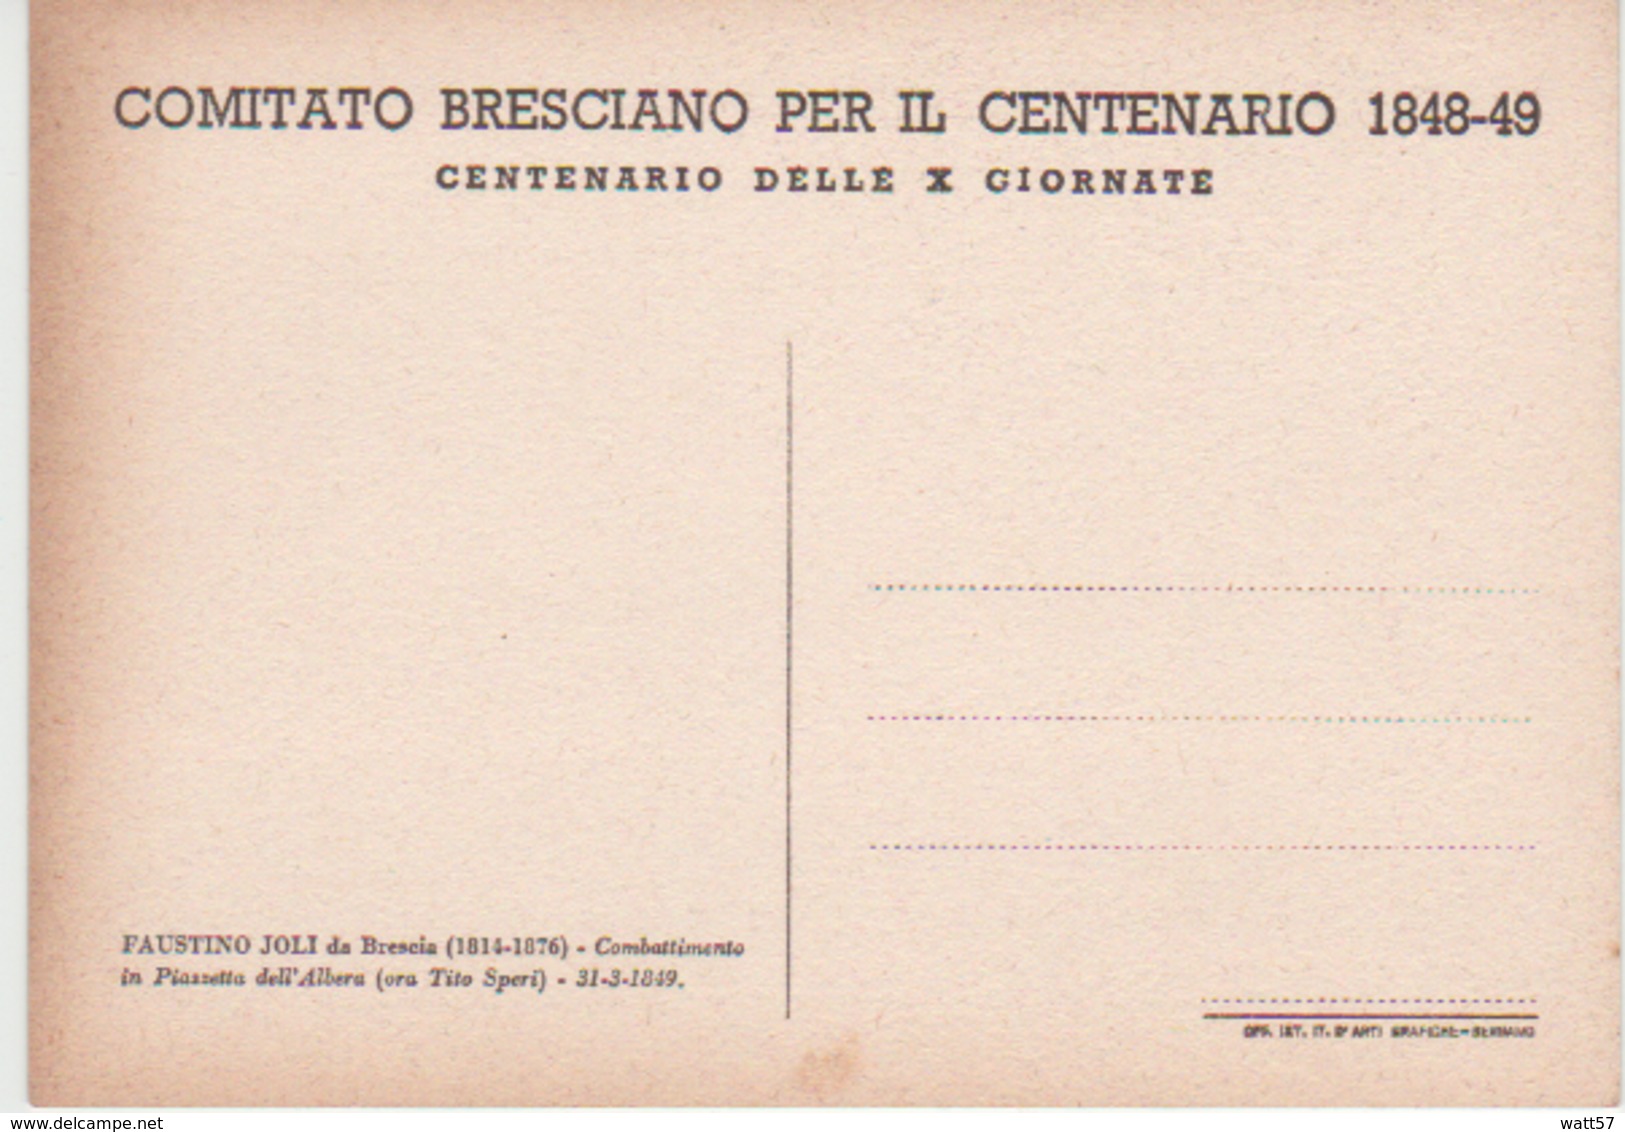 Comitato Bresciano Per Il Centenario 1848-49